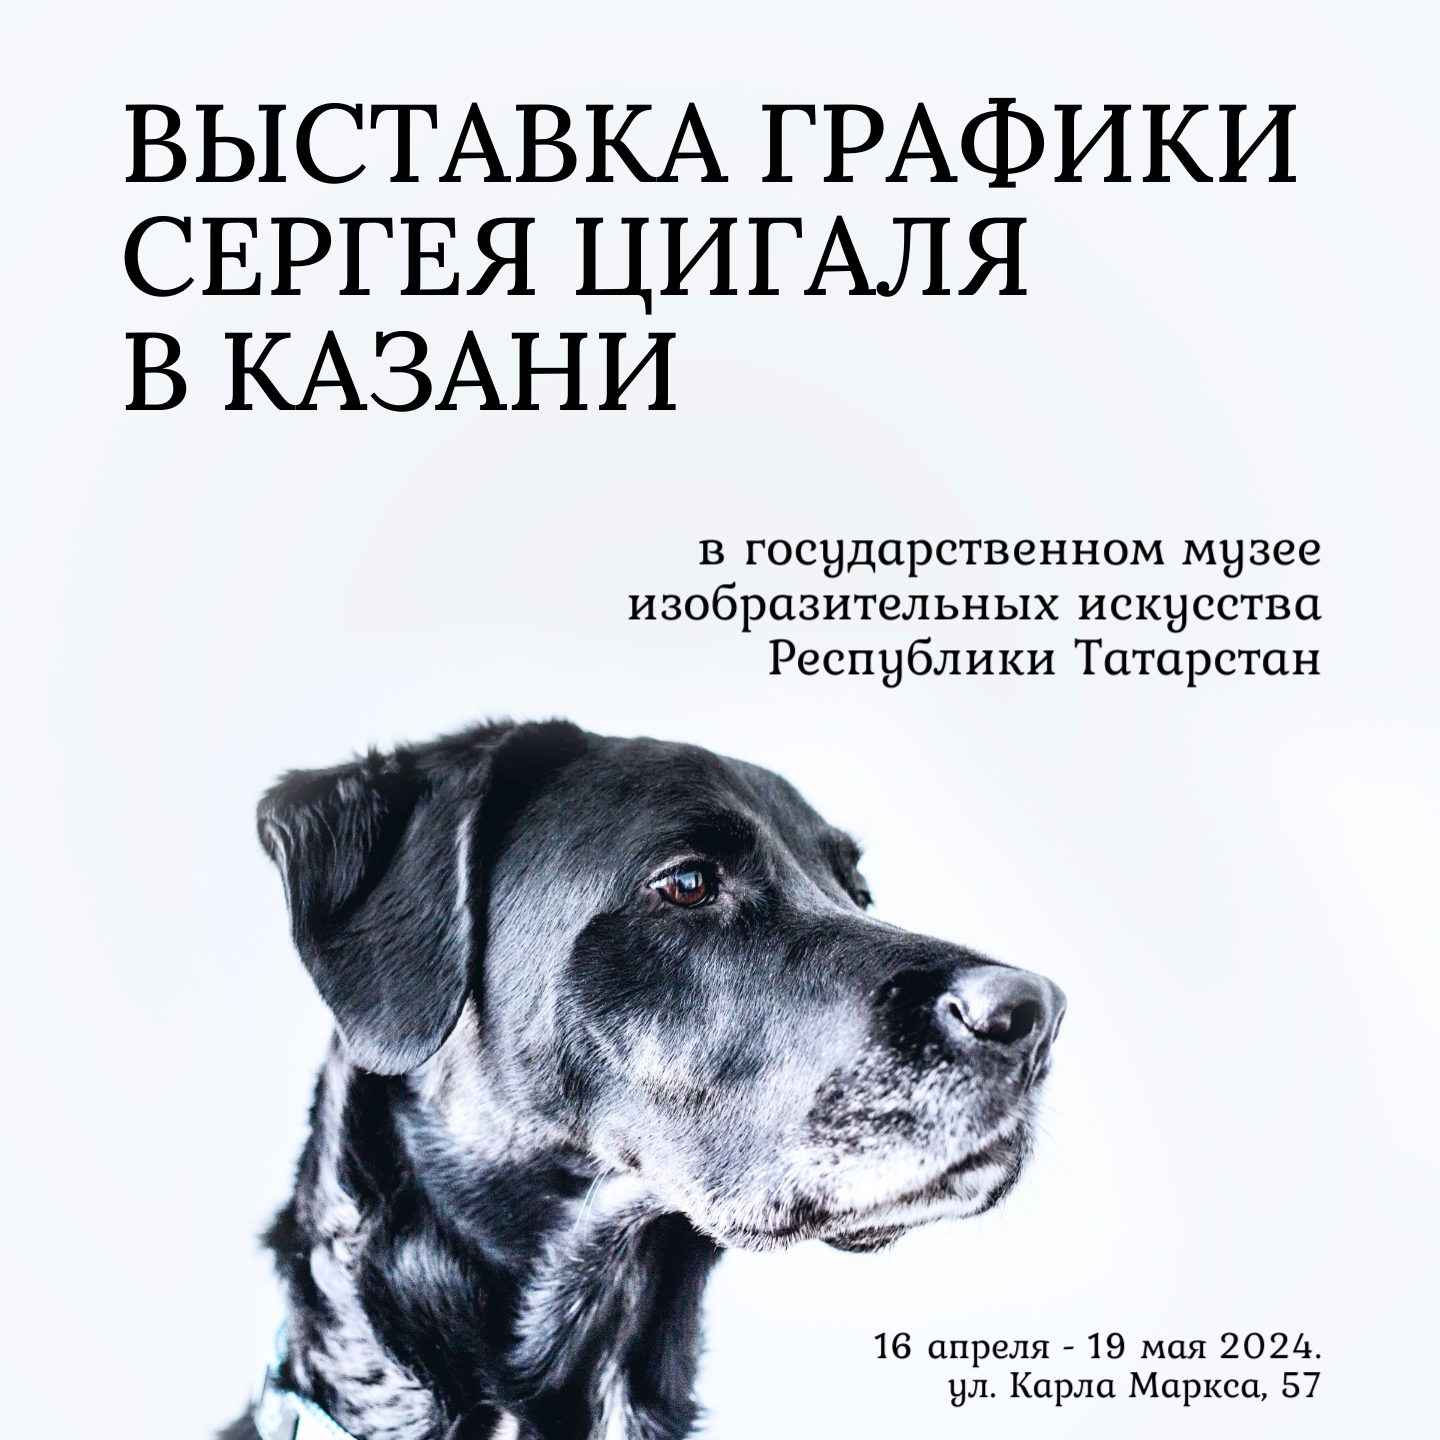 Выставка графики Сергея Цигаля в Казани